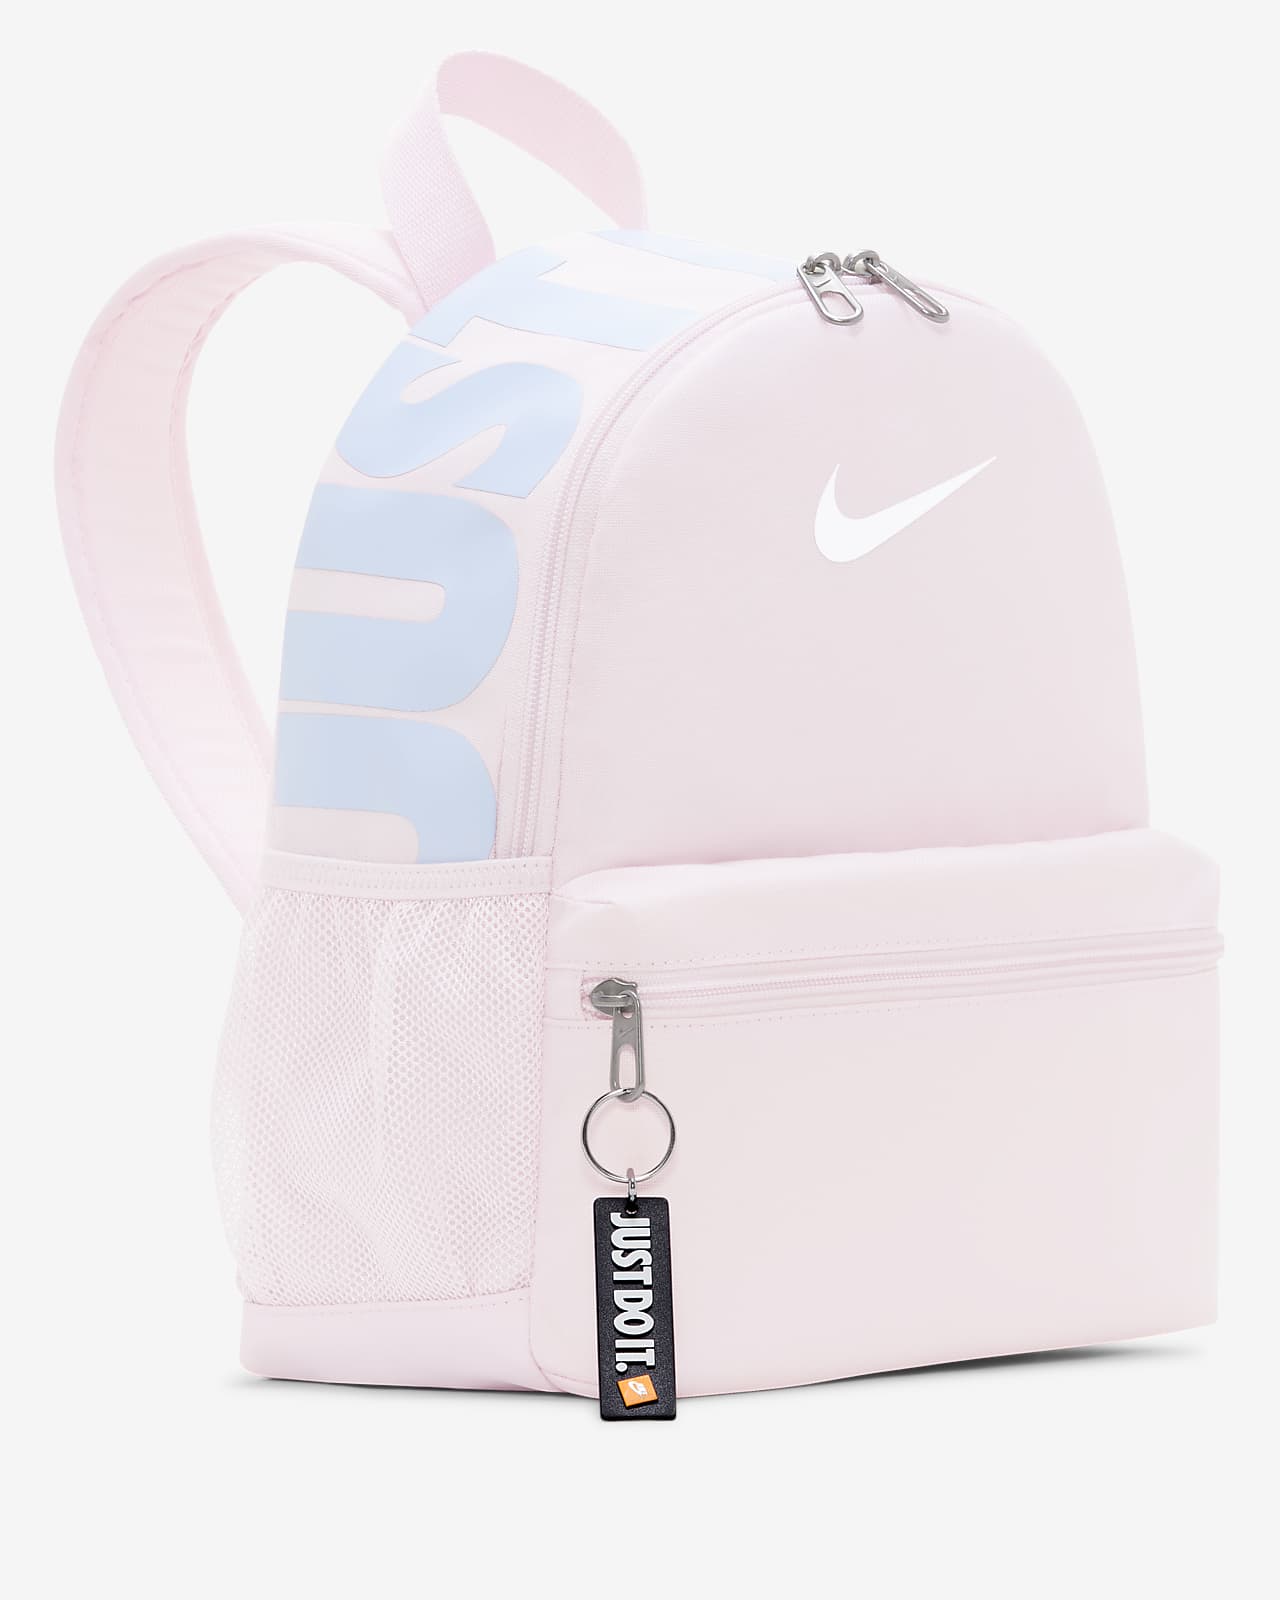 nike pink mini backpack